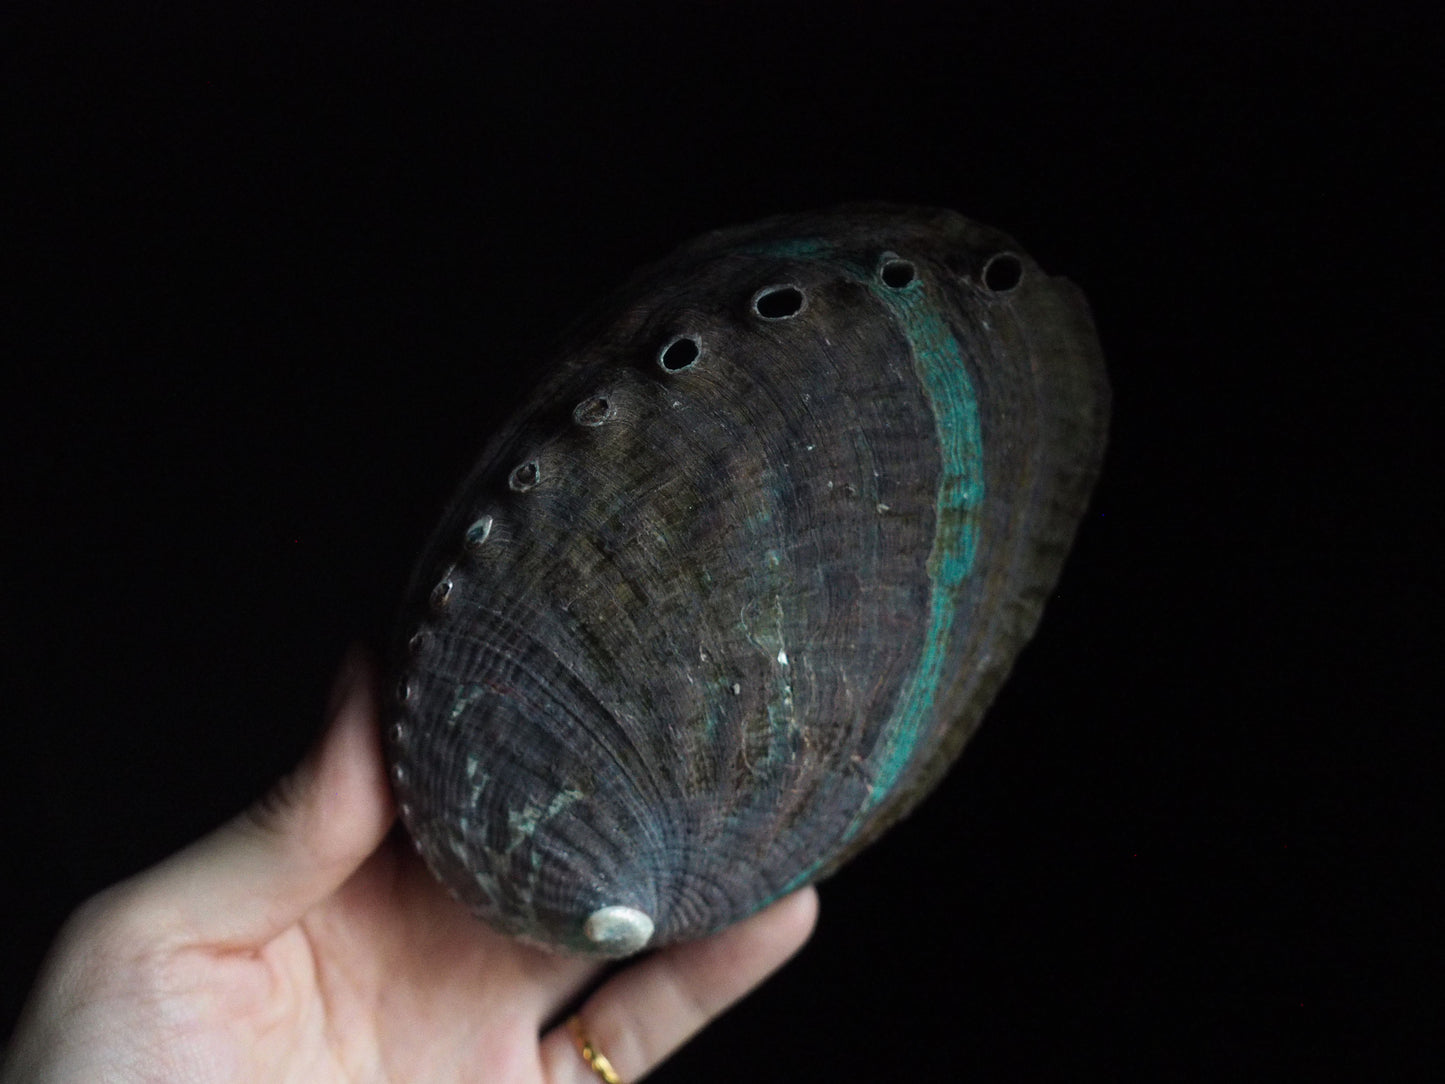 abalone shell (unpolished)